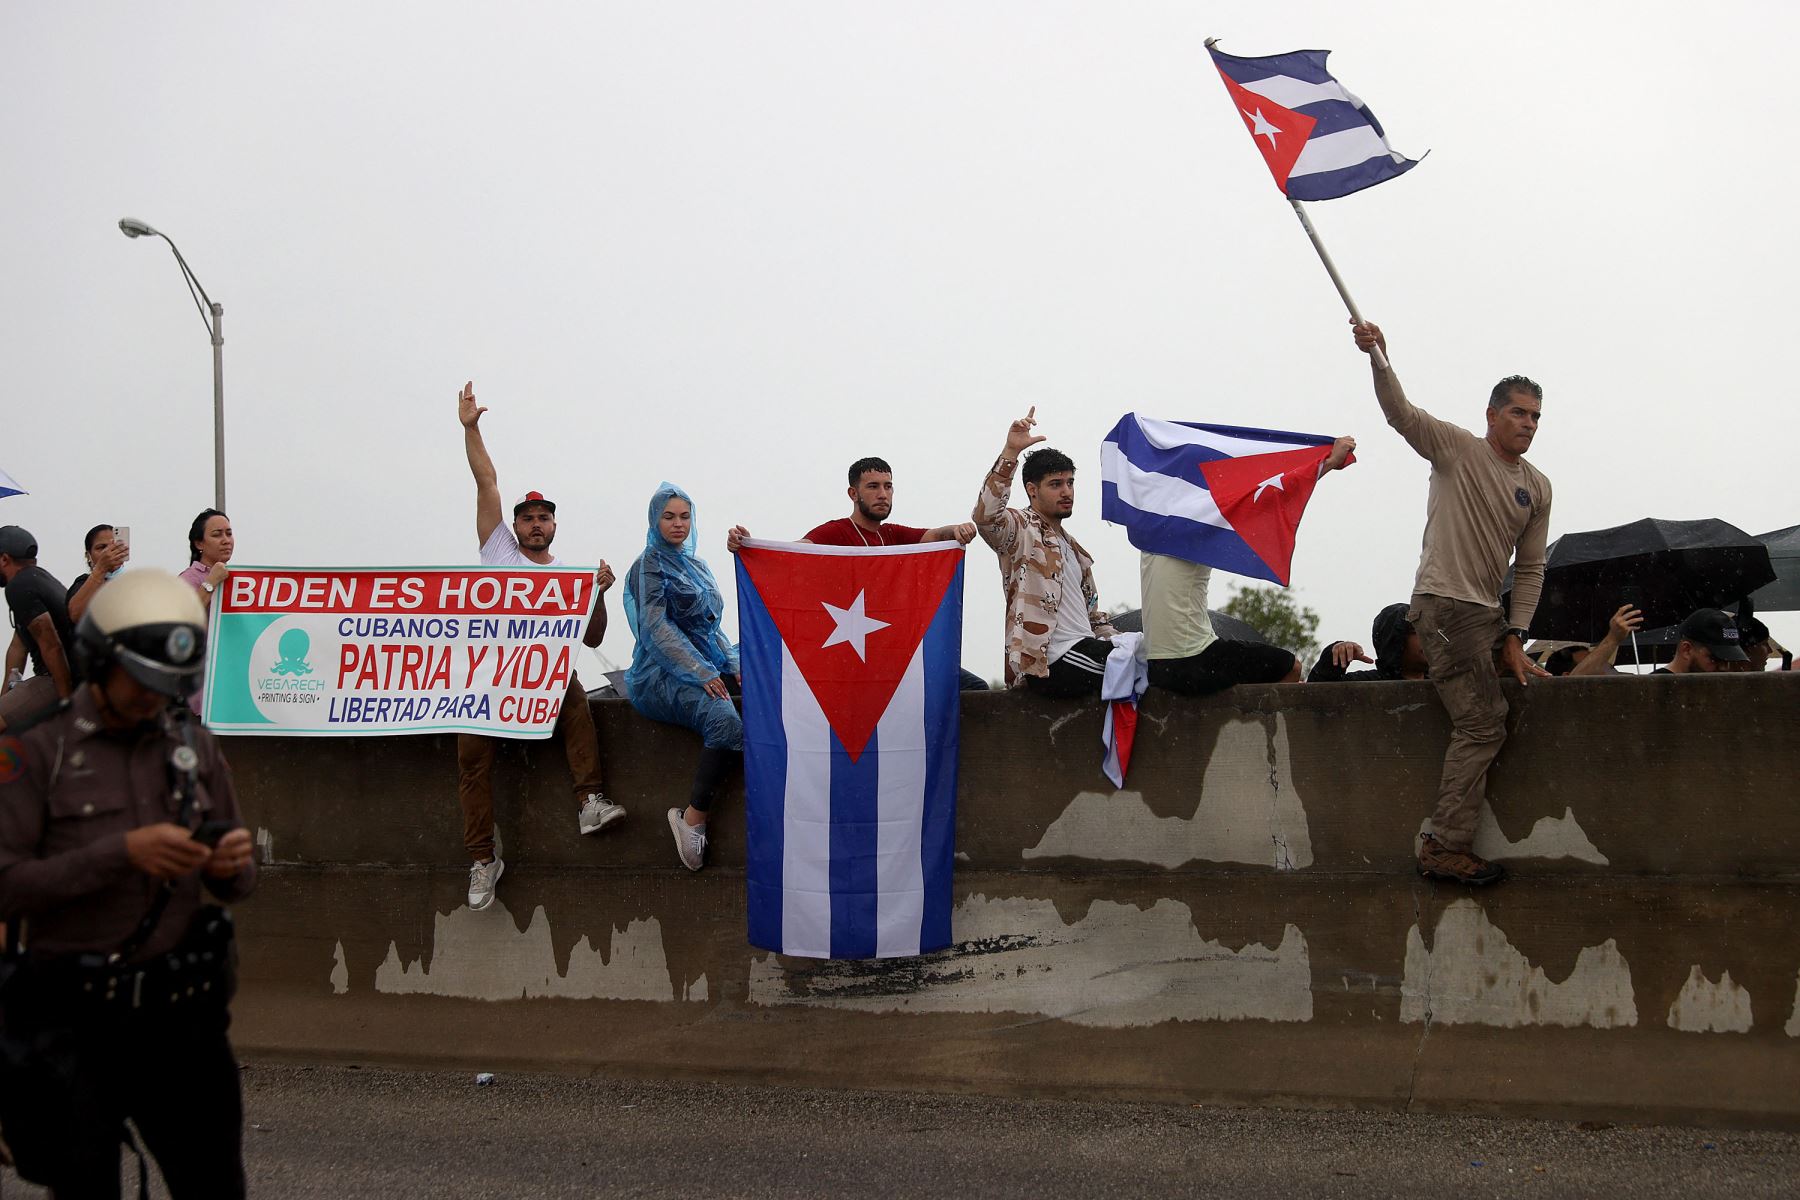 Los manifestantes cerraron parte de la autopista Palmetto Expressway mientras muestran su apoyo a las personas en Cuba que han tomado las calles para protestar en Miami, Florida. 
Foto: AFP